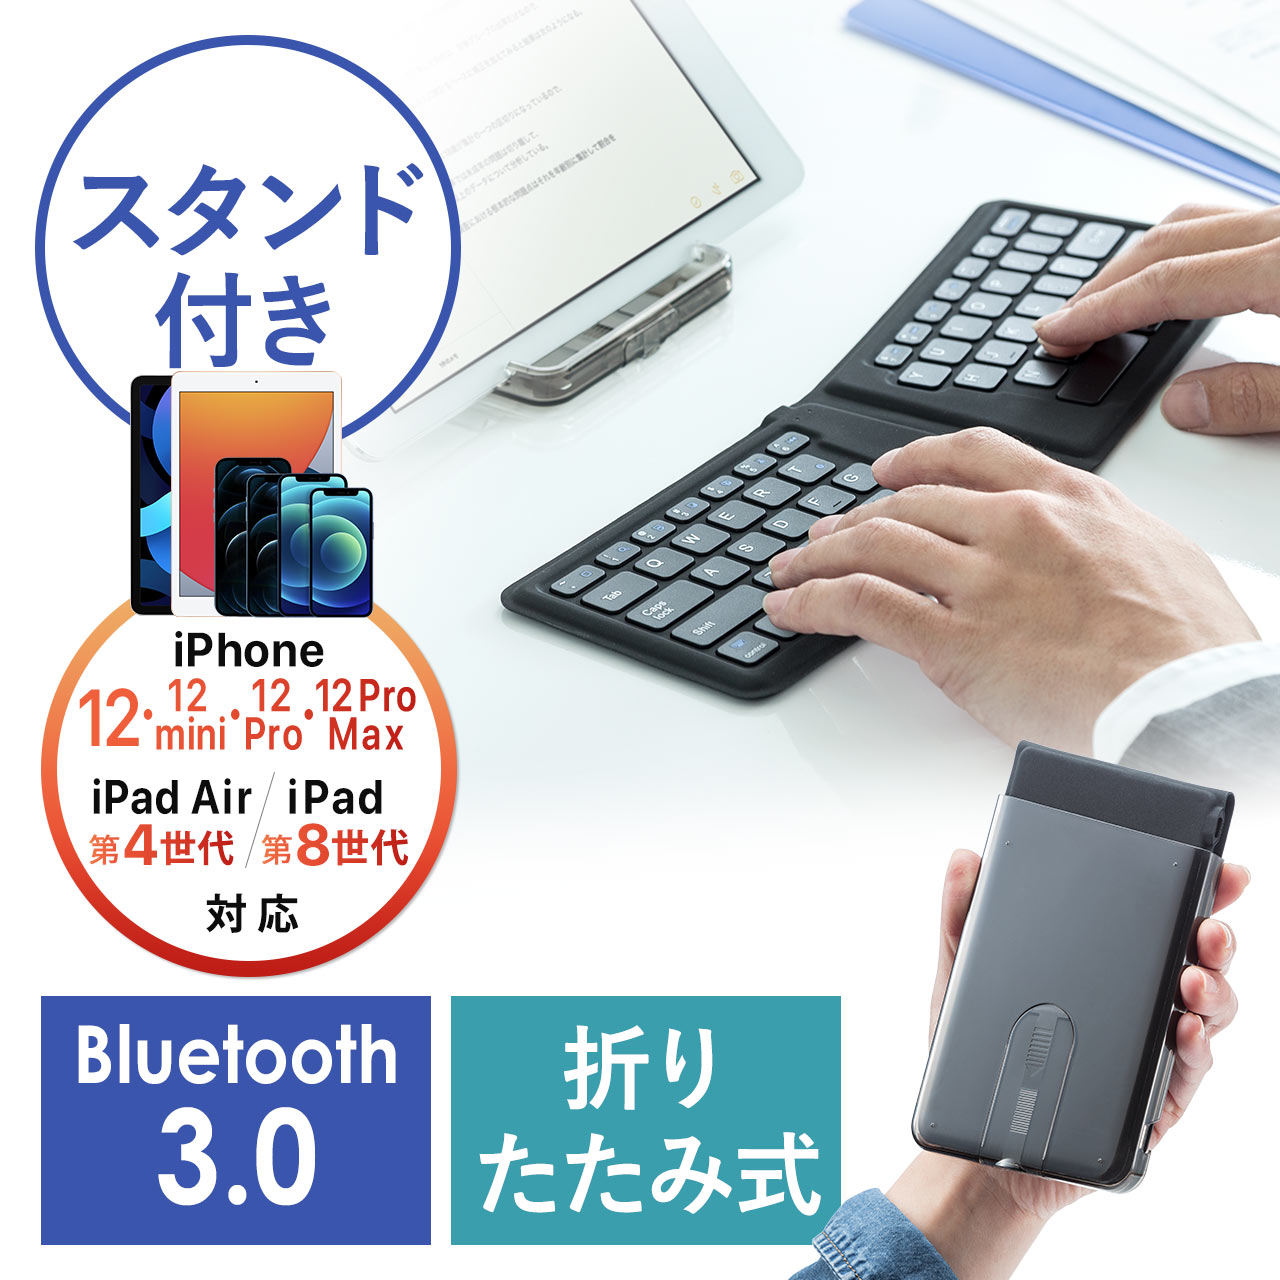 Bluetoothキーボード 軽い 薄い 折りたたみ式 Ipad対応 サンワダイレクト